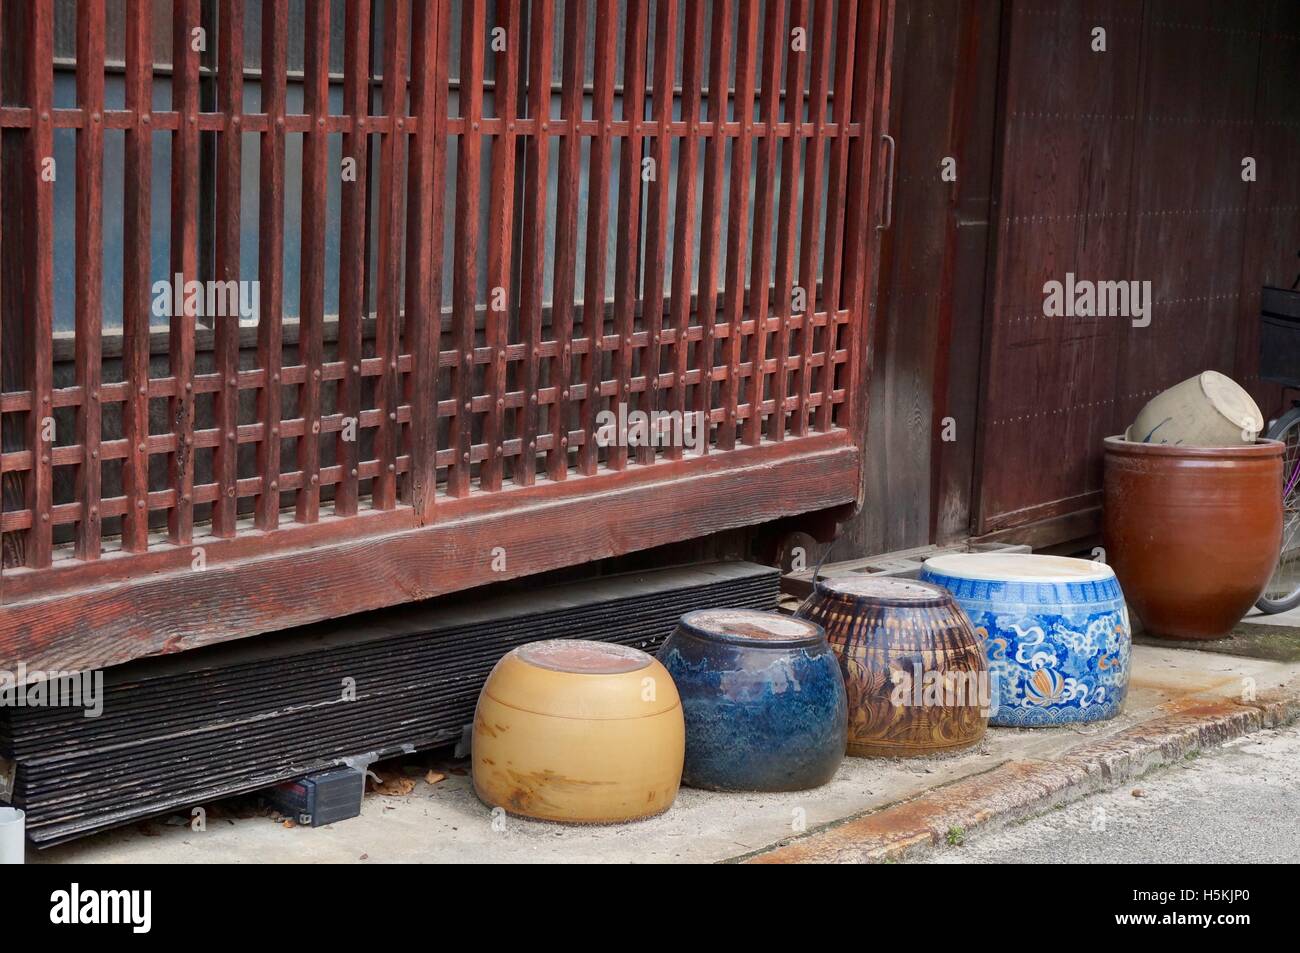 Il vecchio tradizionale giapponese vasi di ceramica ad asciugare in strada, l'isola di Miyajima island Foto Stock